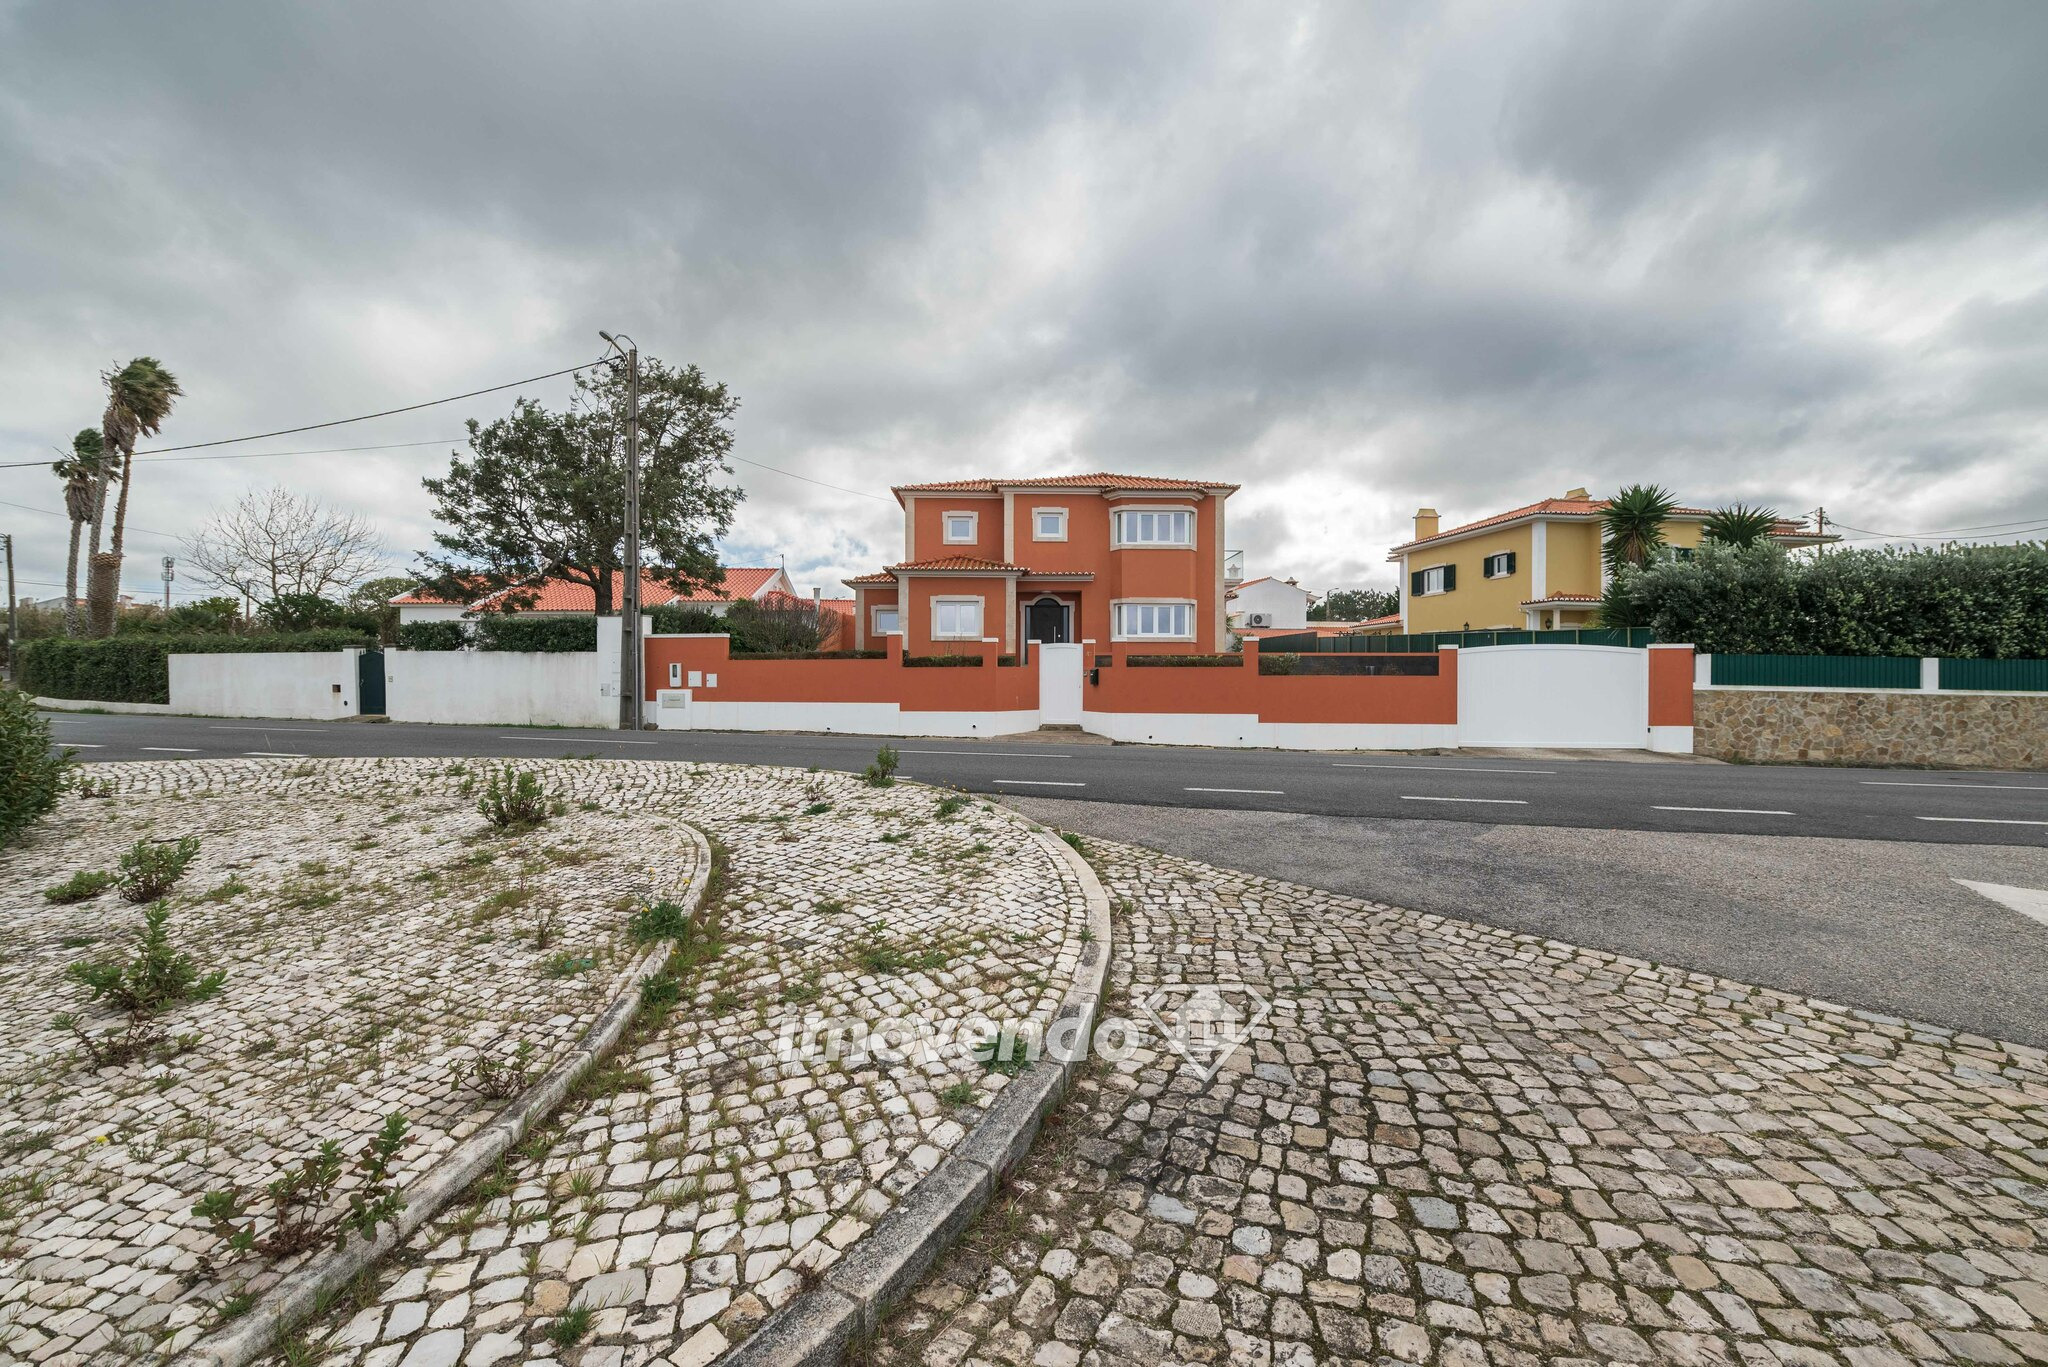 Moradia isolada T6 de luxo, com piscina, jardim e garagem, em Sintra